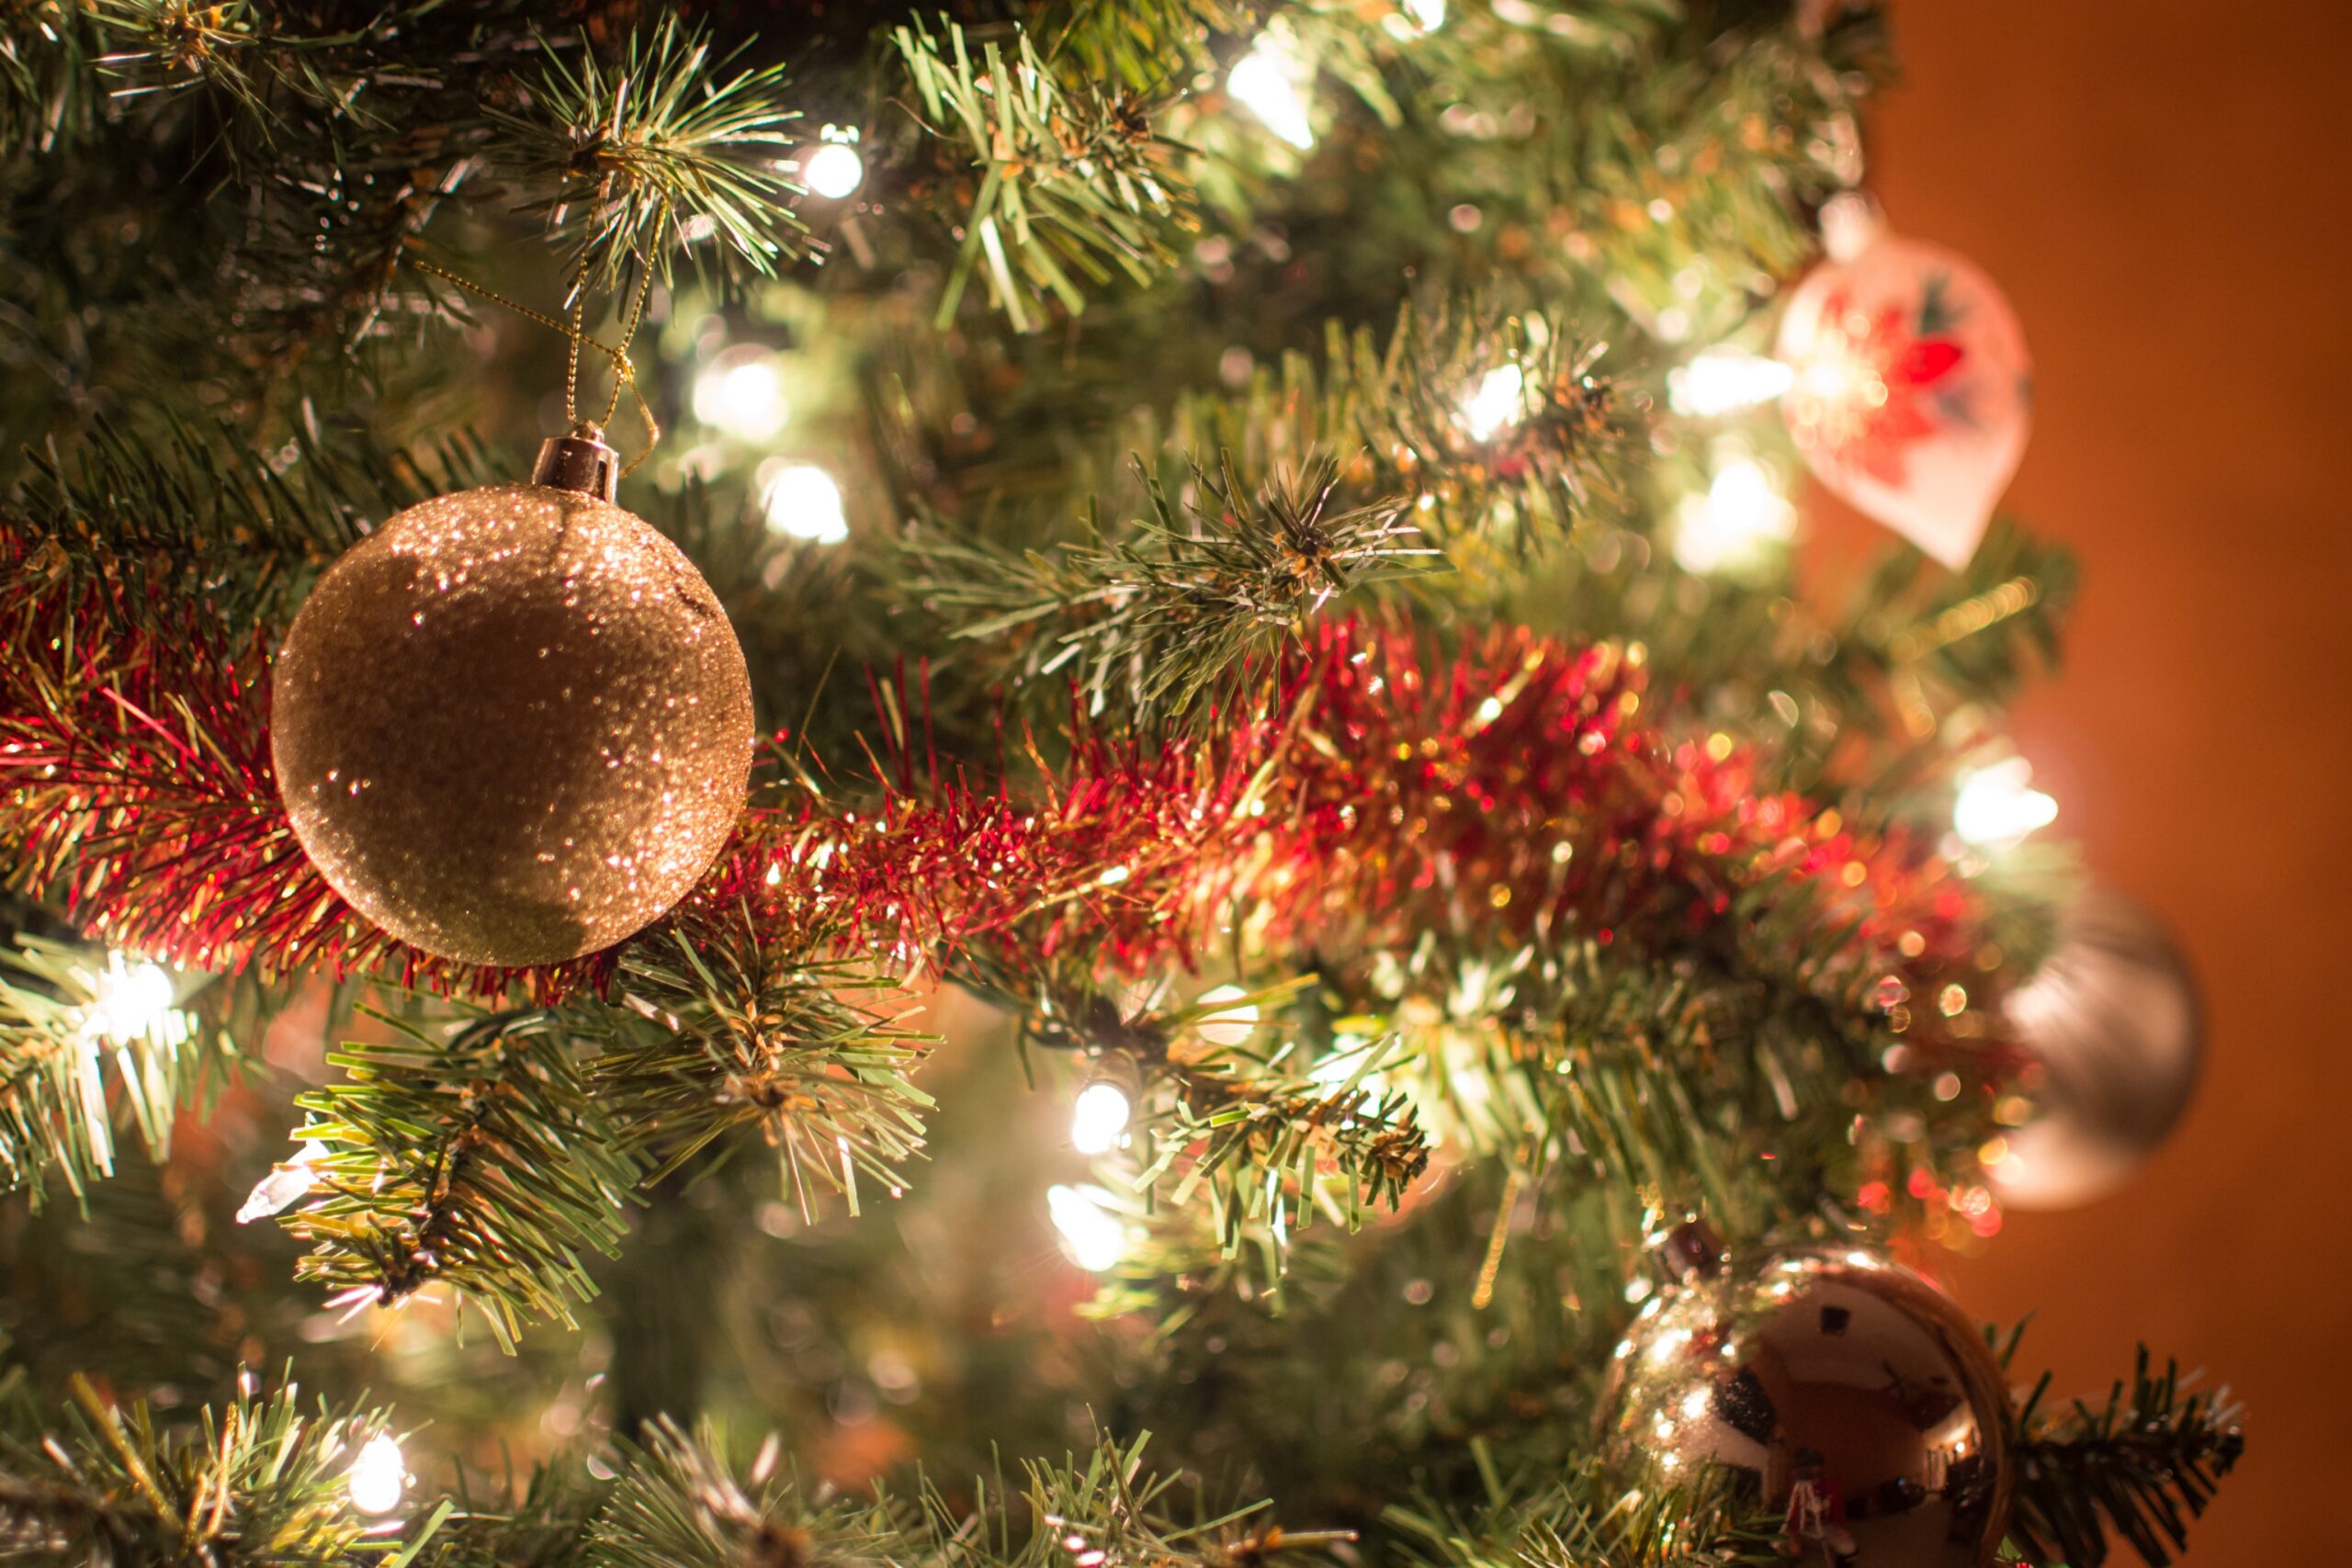 Slatington Kicks Off the Holiday Season with tree lighting